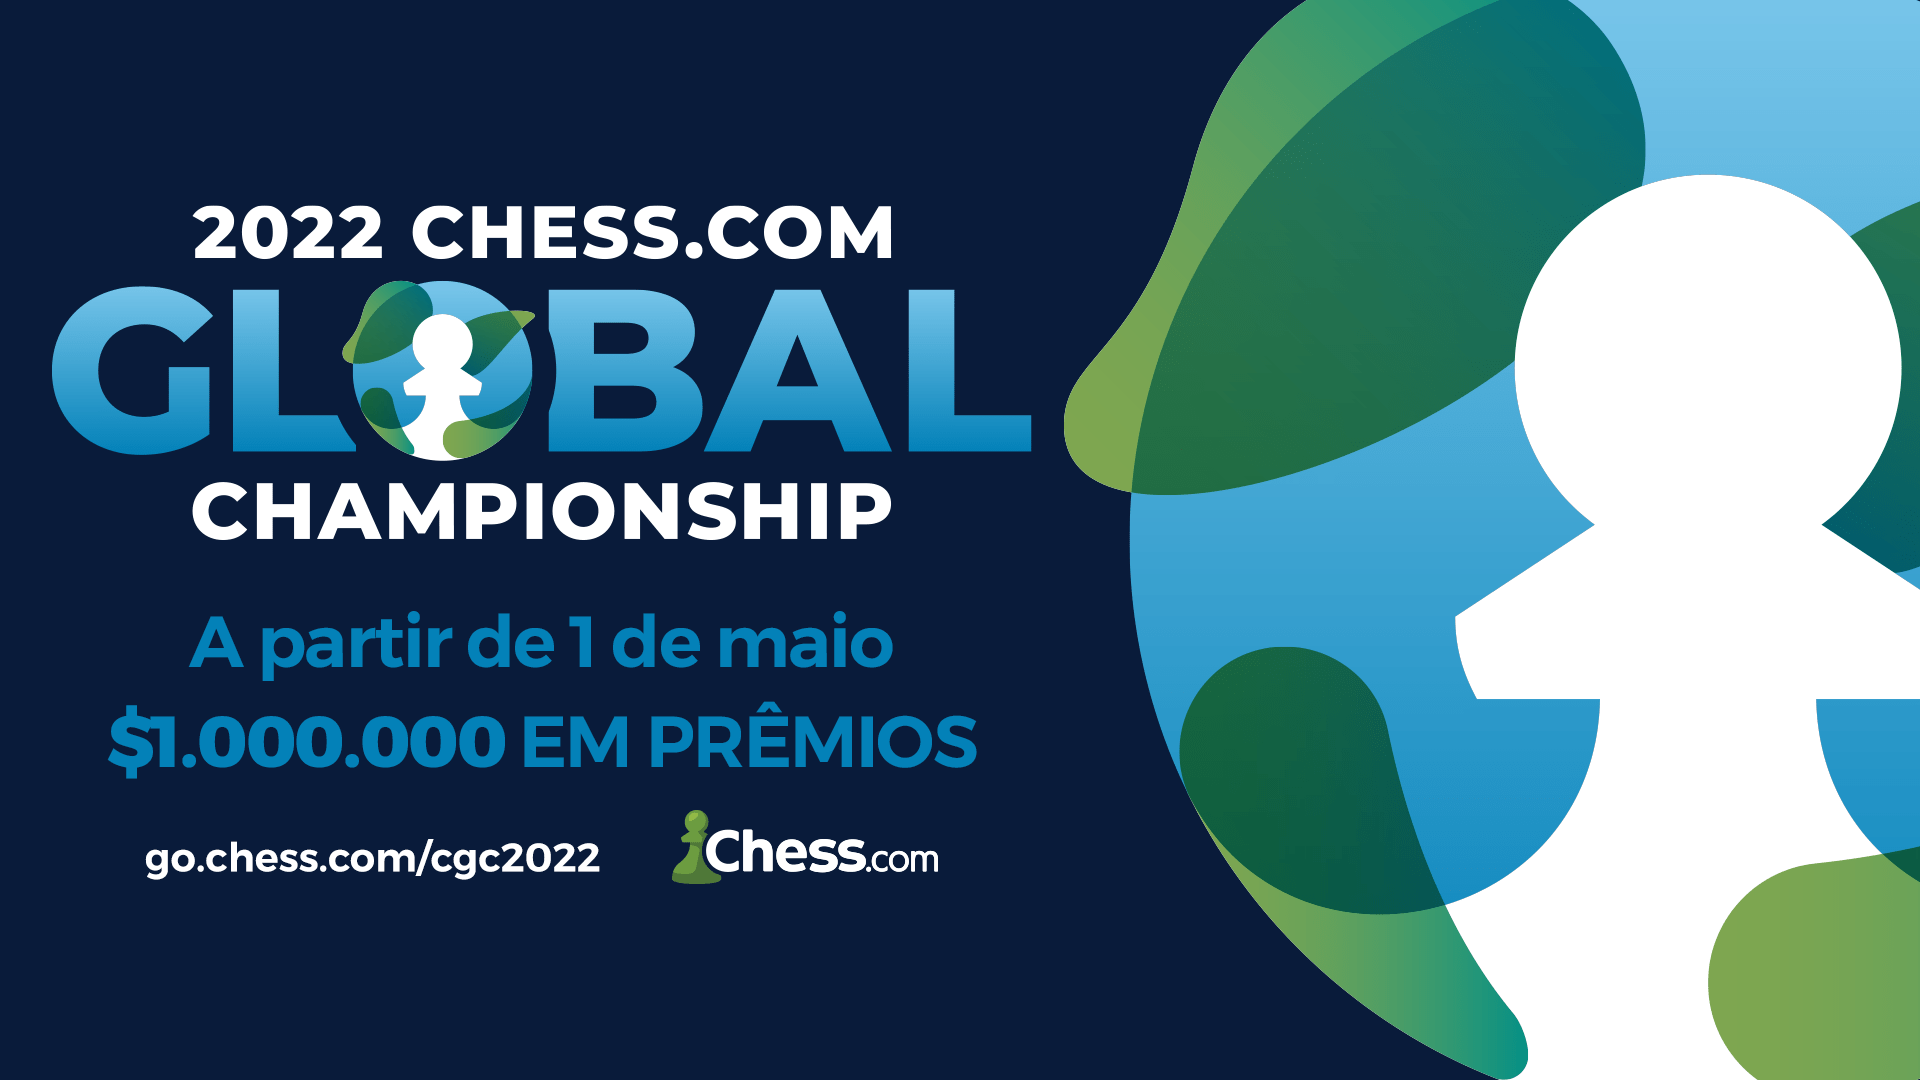 Cuiabá é sede de campeonato nacional de xadrez com premiação de R$ 52 mil  :: Olhar Conceito